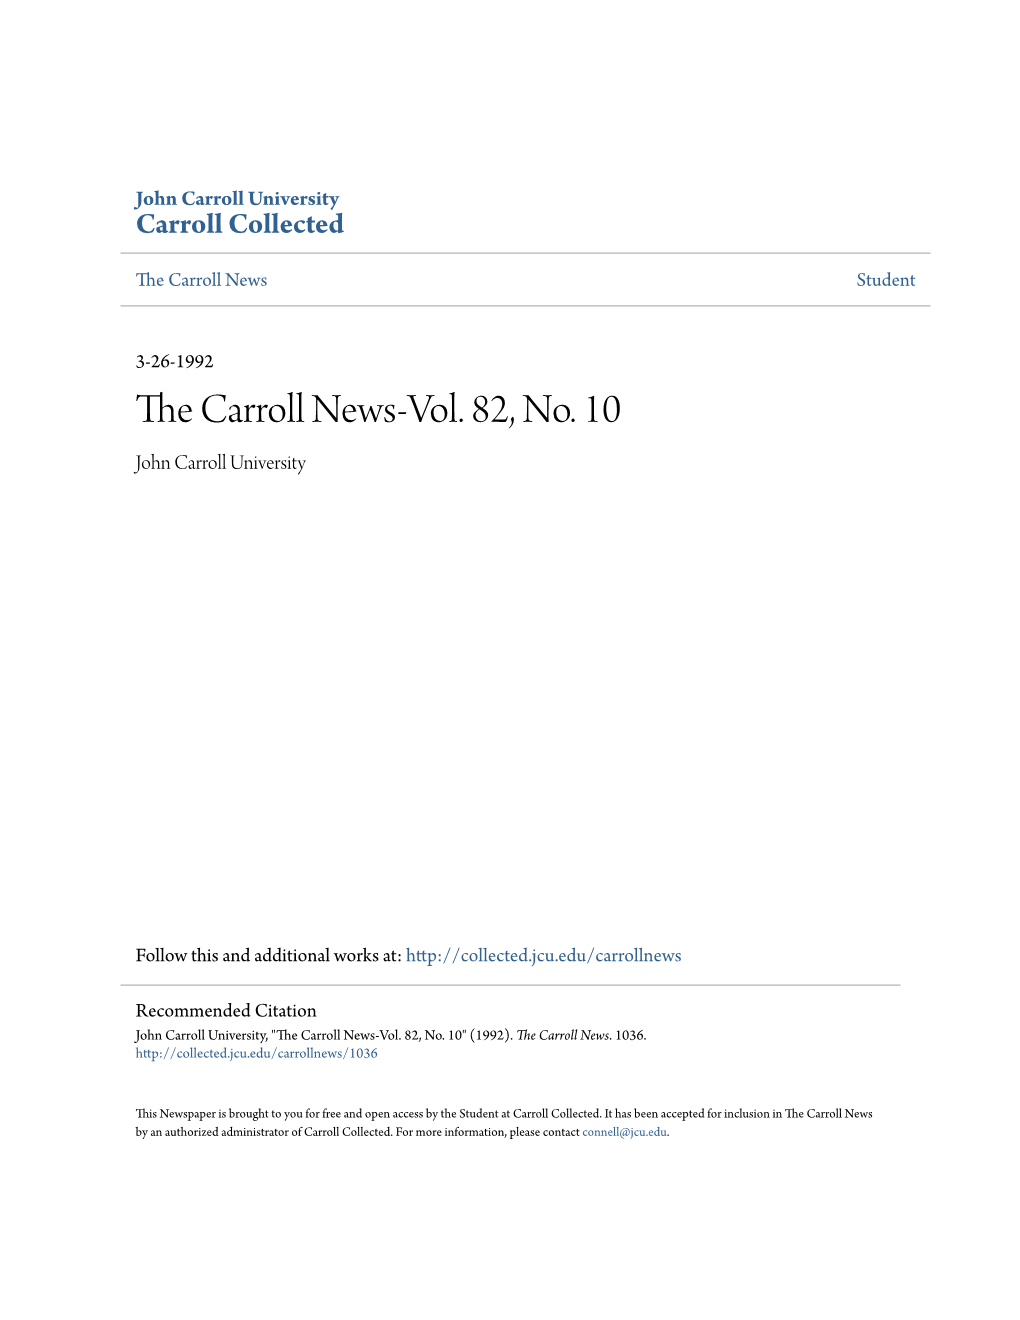 The Carroll News-Vol. 82, No. 10